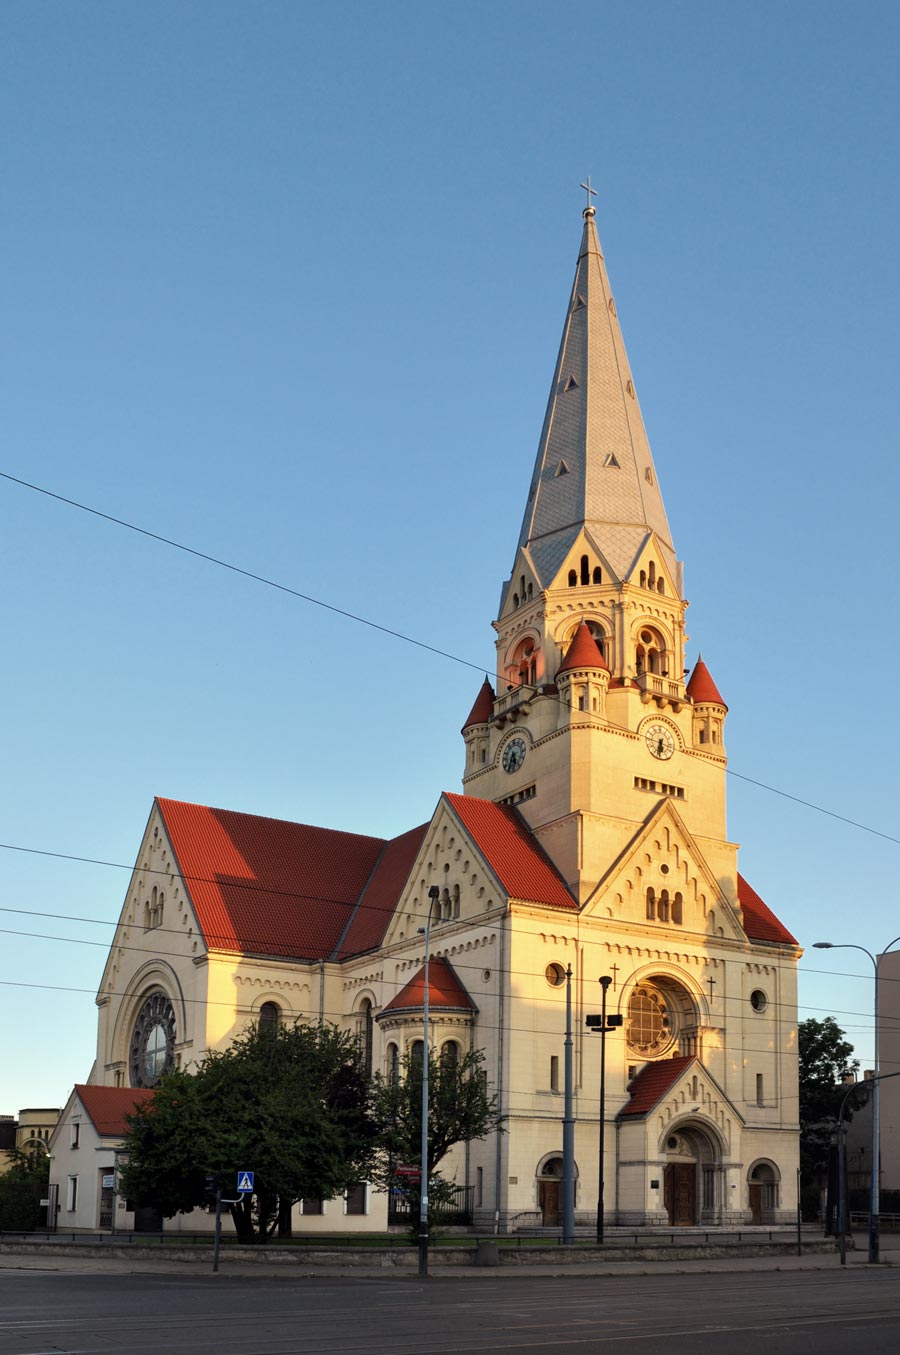 Kościół ewangelicko-augsburski w Łodzi (św. Mateusza)